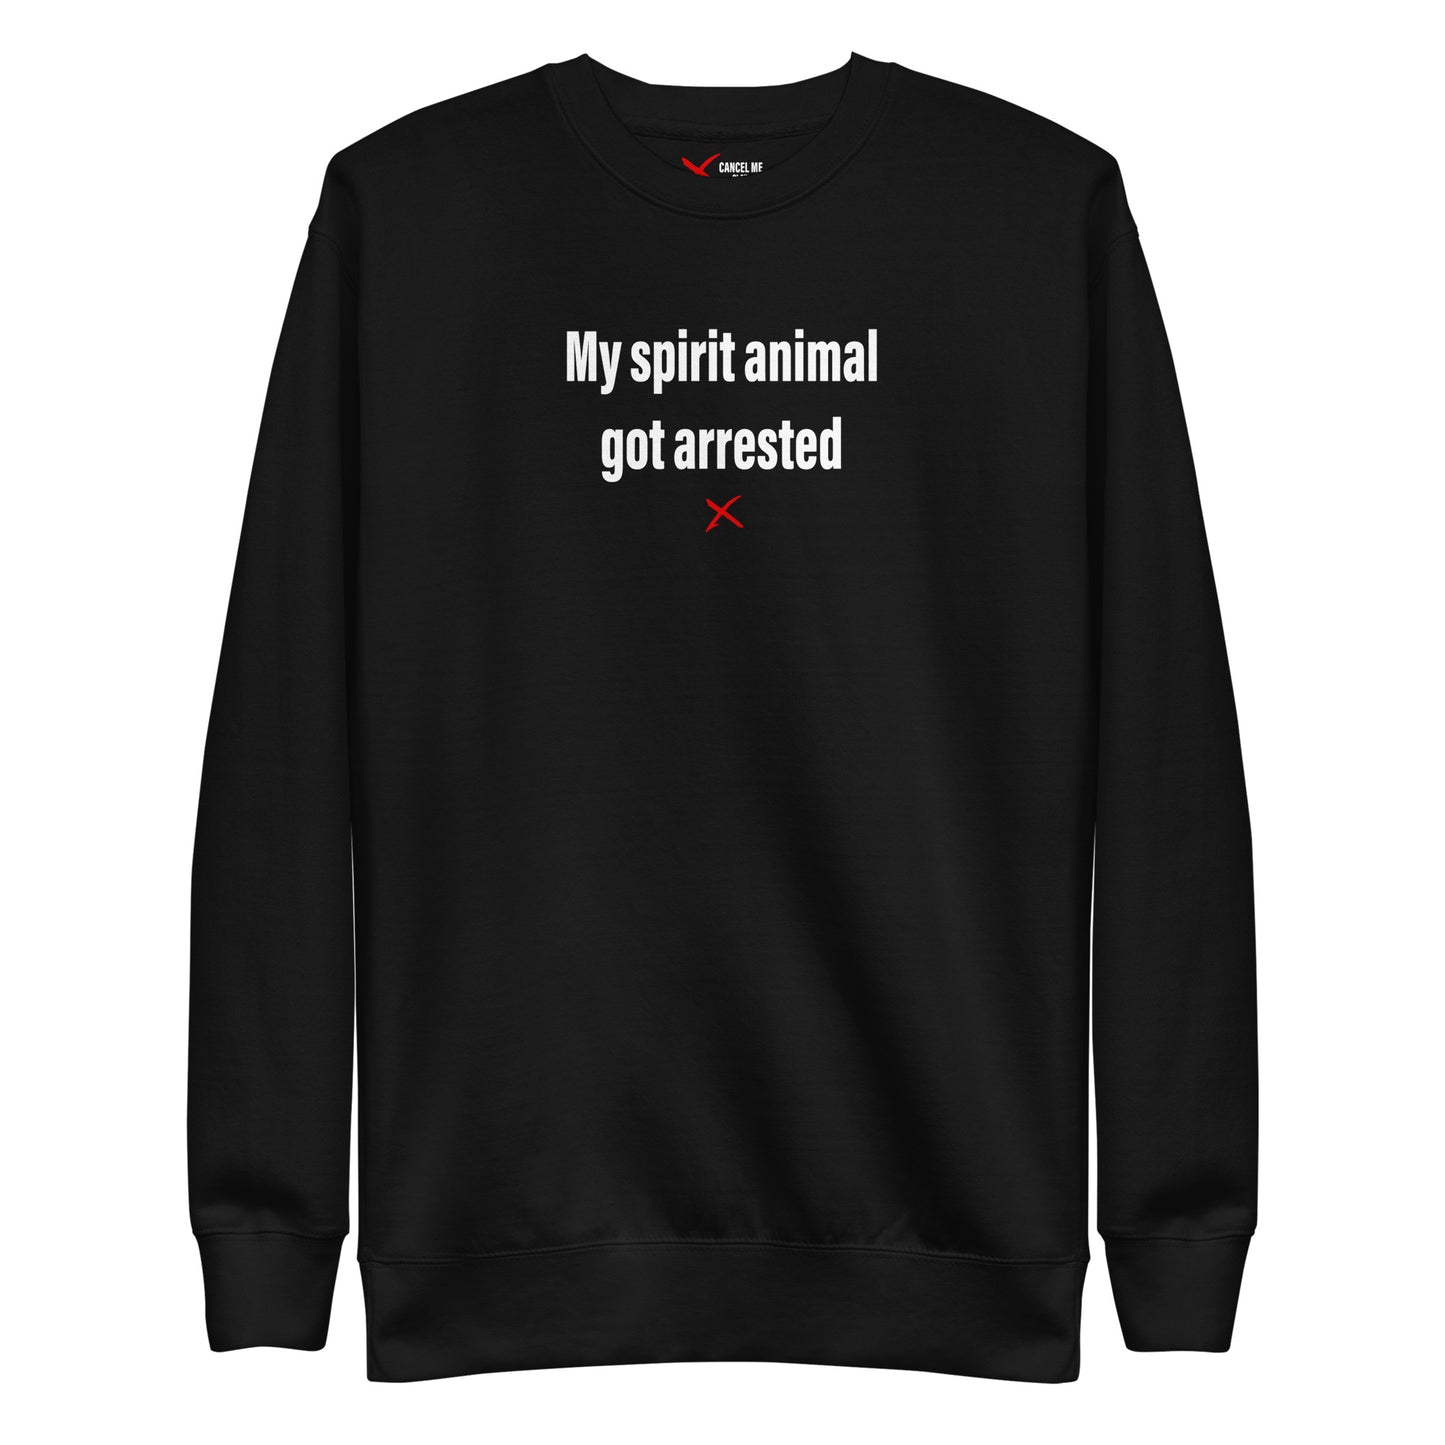 My spirit animal got arrested - Sweatshirt